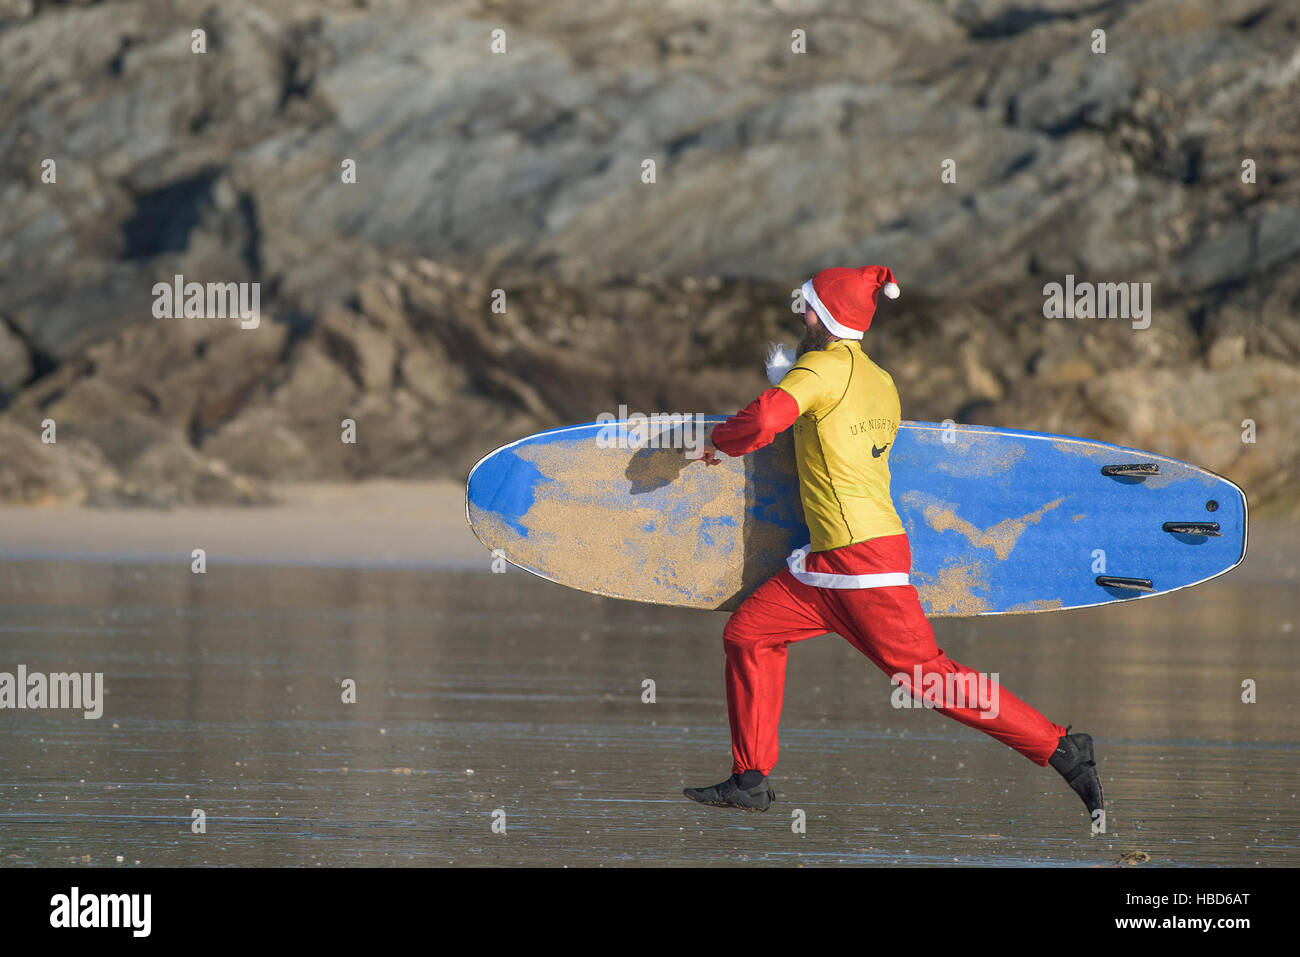 Eine Surf Santa läuft in einem Rennen zu Beginn der Geldbeschaffung Santa Surfen Wettbewerb auf einem sehr kühl Fistral Beach in Newquay, Cornwall. UK. Stockfoto